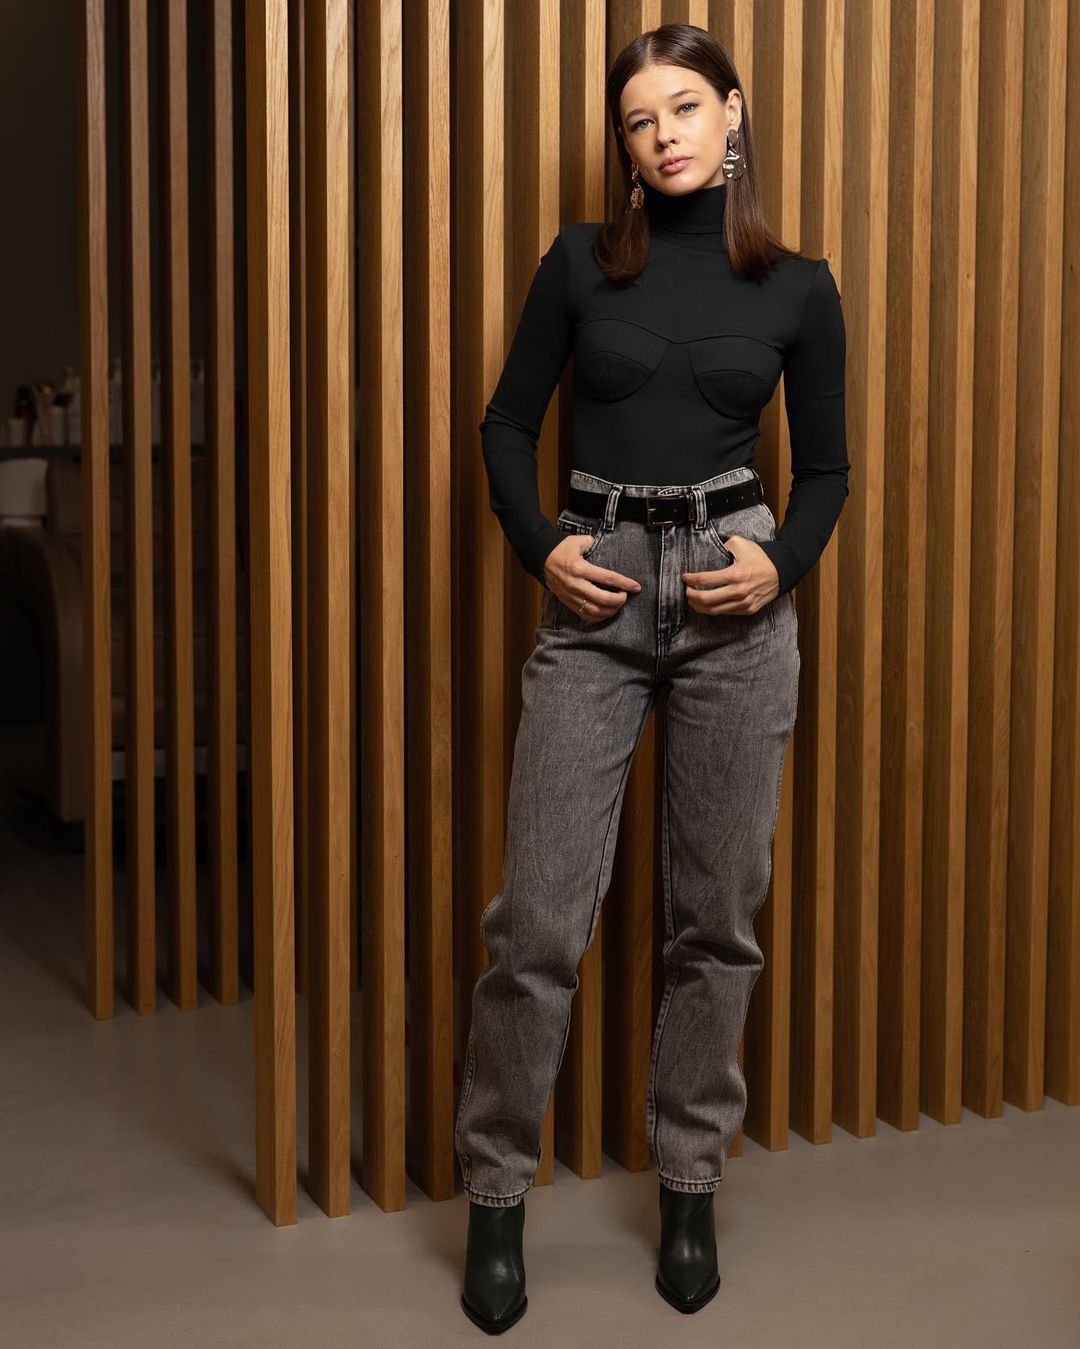  Екатерина Шпица предстала в модных серых джинсах